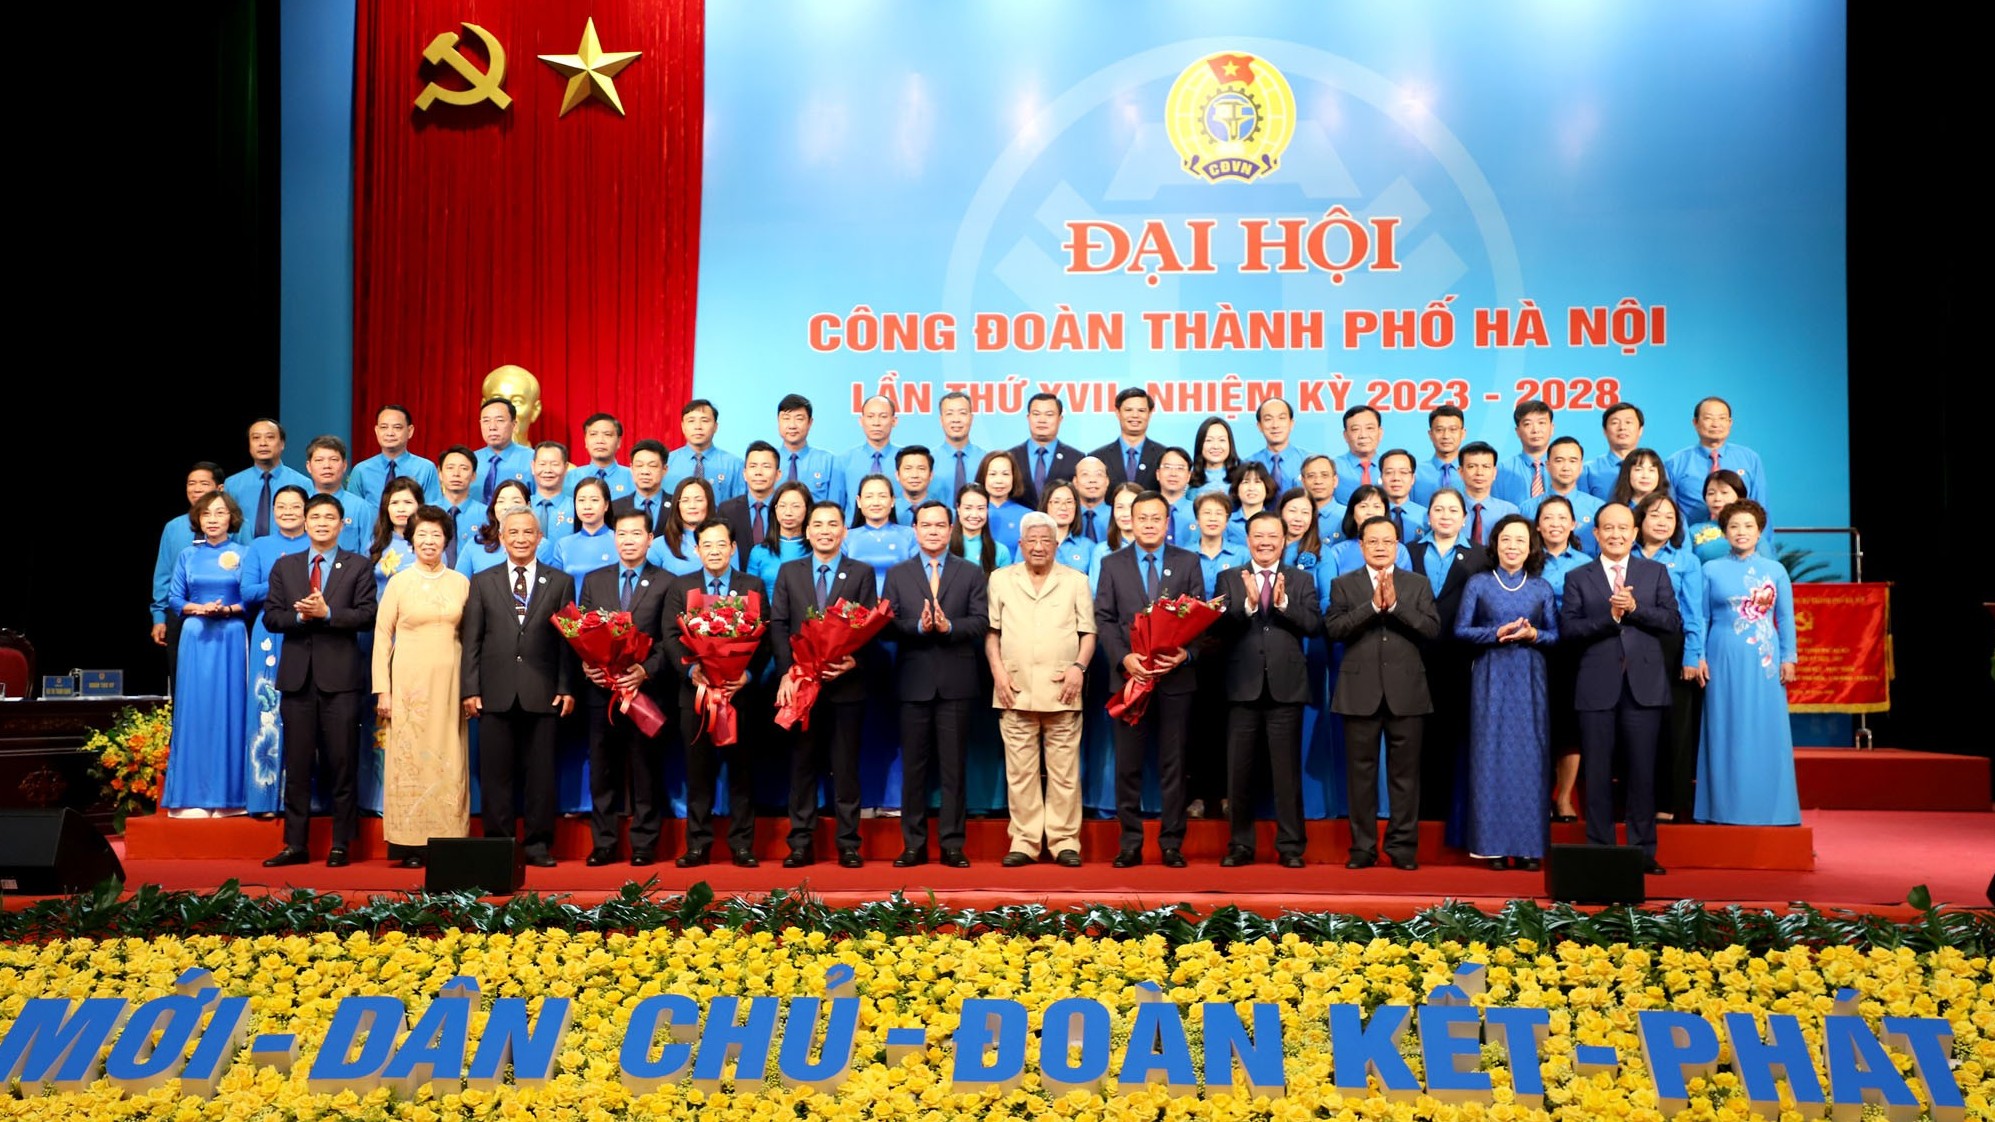 Video: Đại hội Công đoàn thành phố Hà Nội lần thứ XVII thành công tốt đẹp